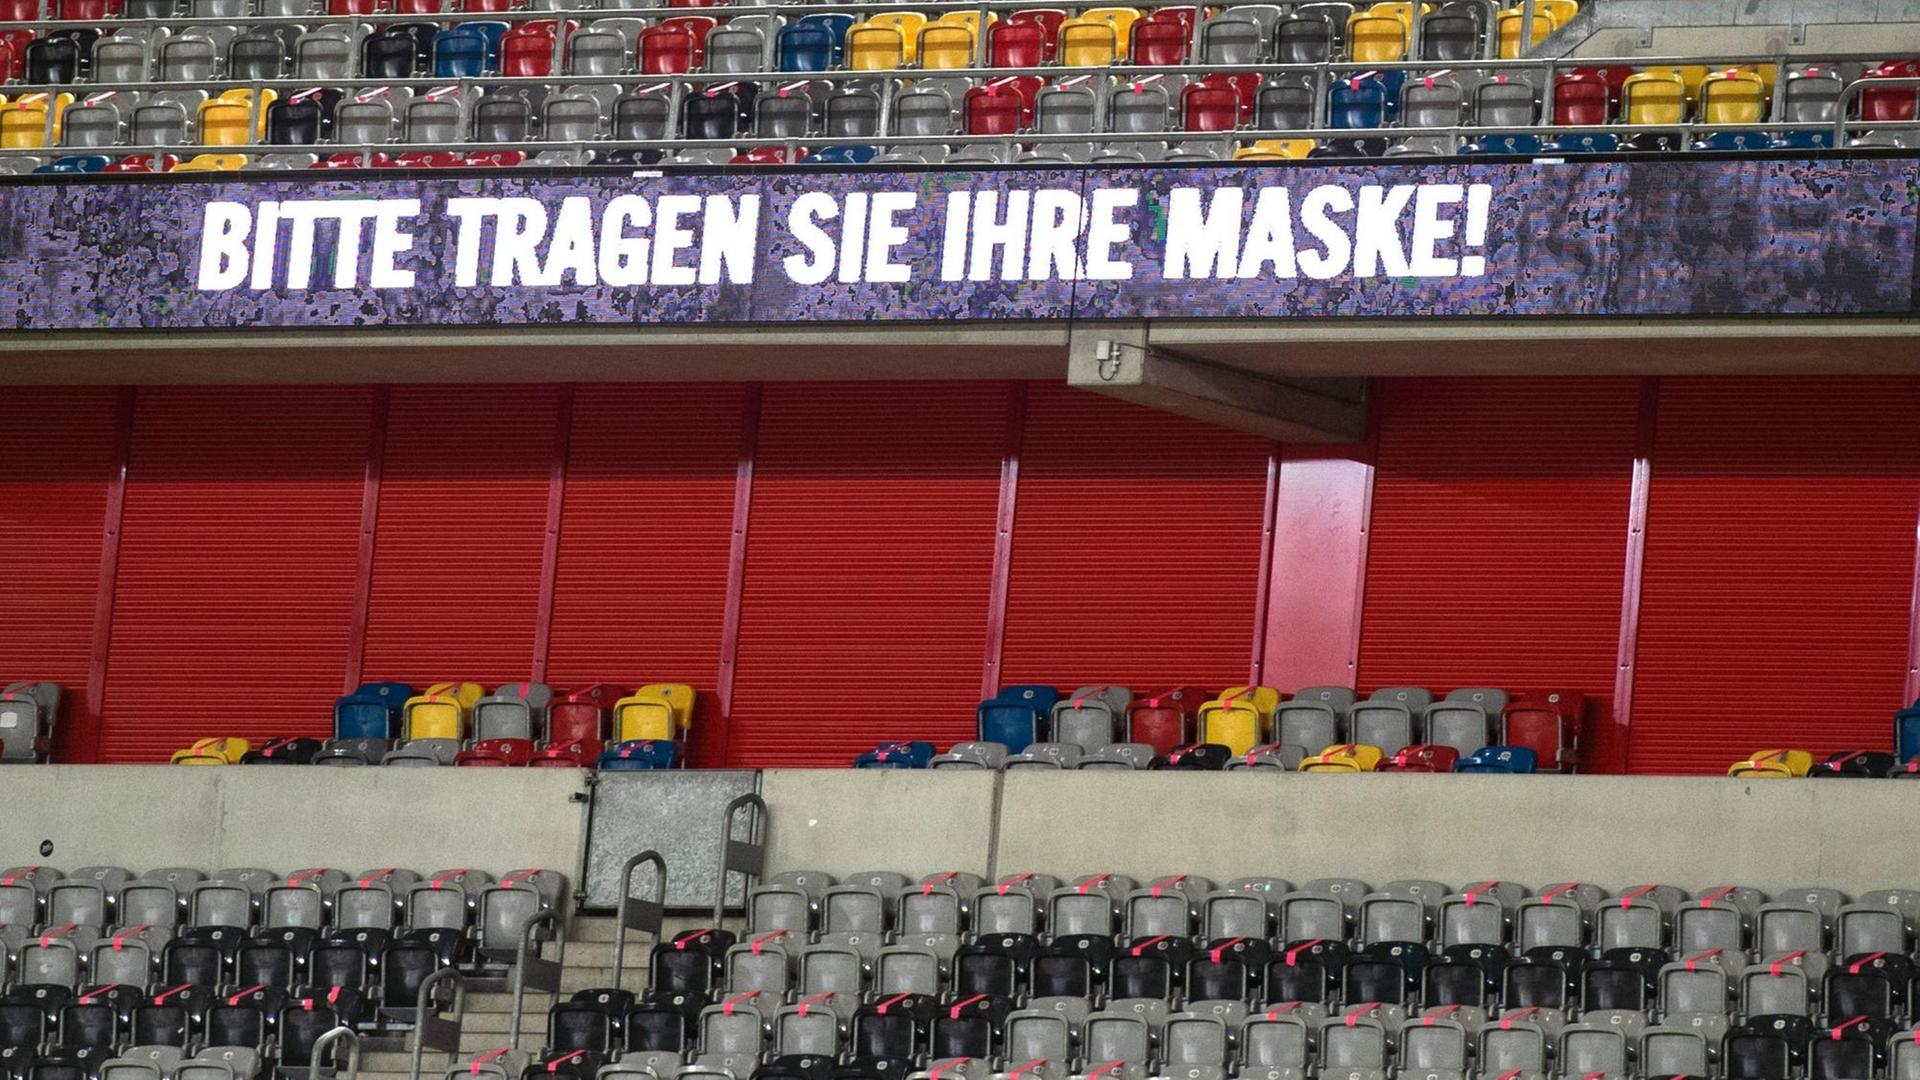 Fußball: 2. Bundesliga, Fortuna Düsseldorf - SpVgg Greuther Fürth, 17. Spieltag in der Merkur Spiel-Arena. «Bitte tragen Sie ihre Maske» ist zwischen leeren Rängen auf einer LED-Werbebande zu lesen.